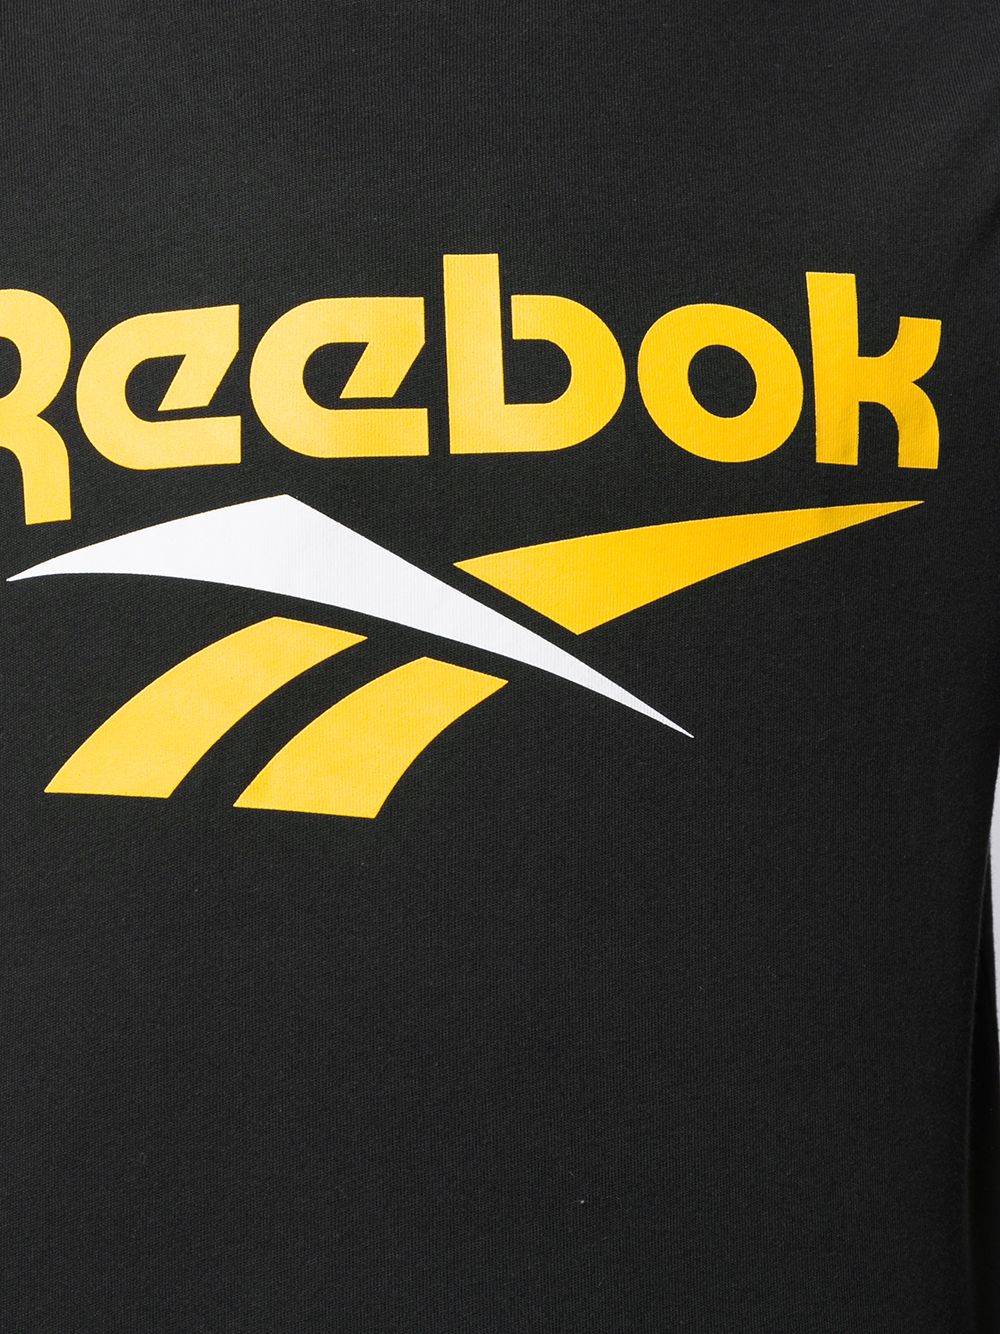 фото Reebok футболка с контрастным логотипом